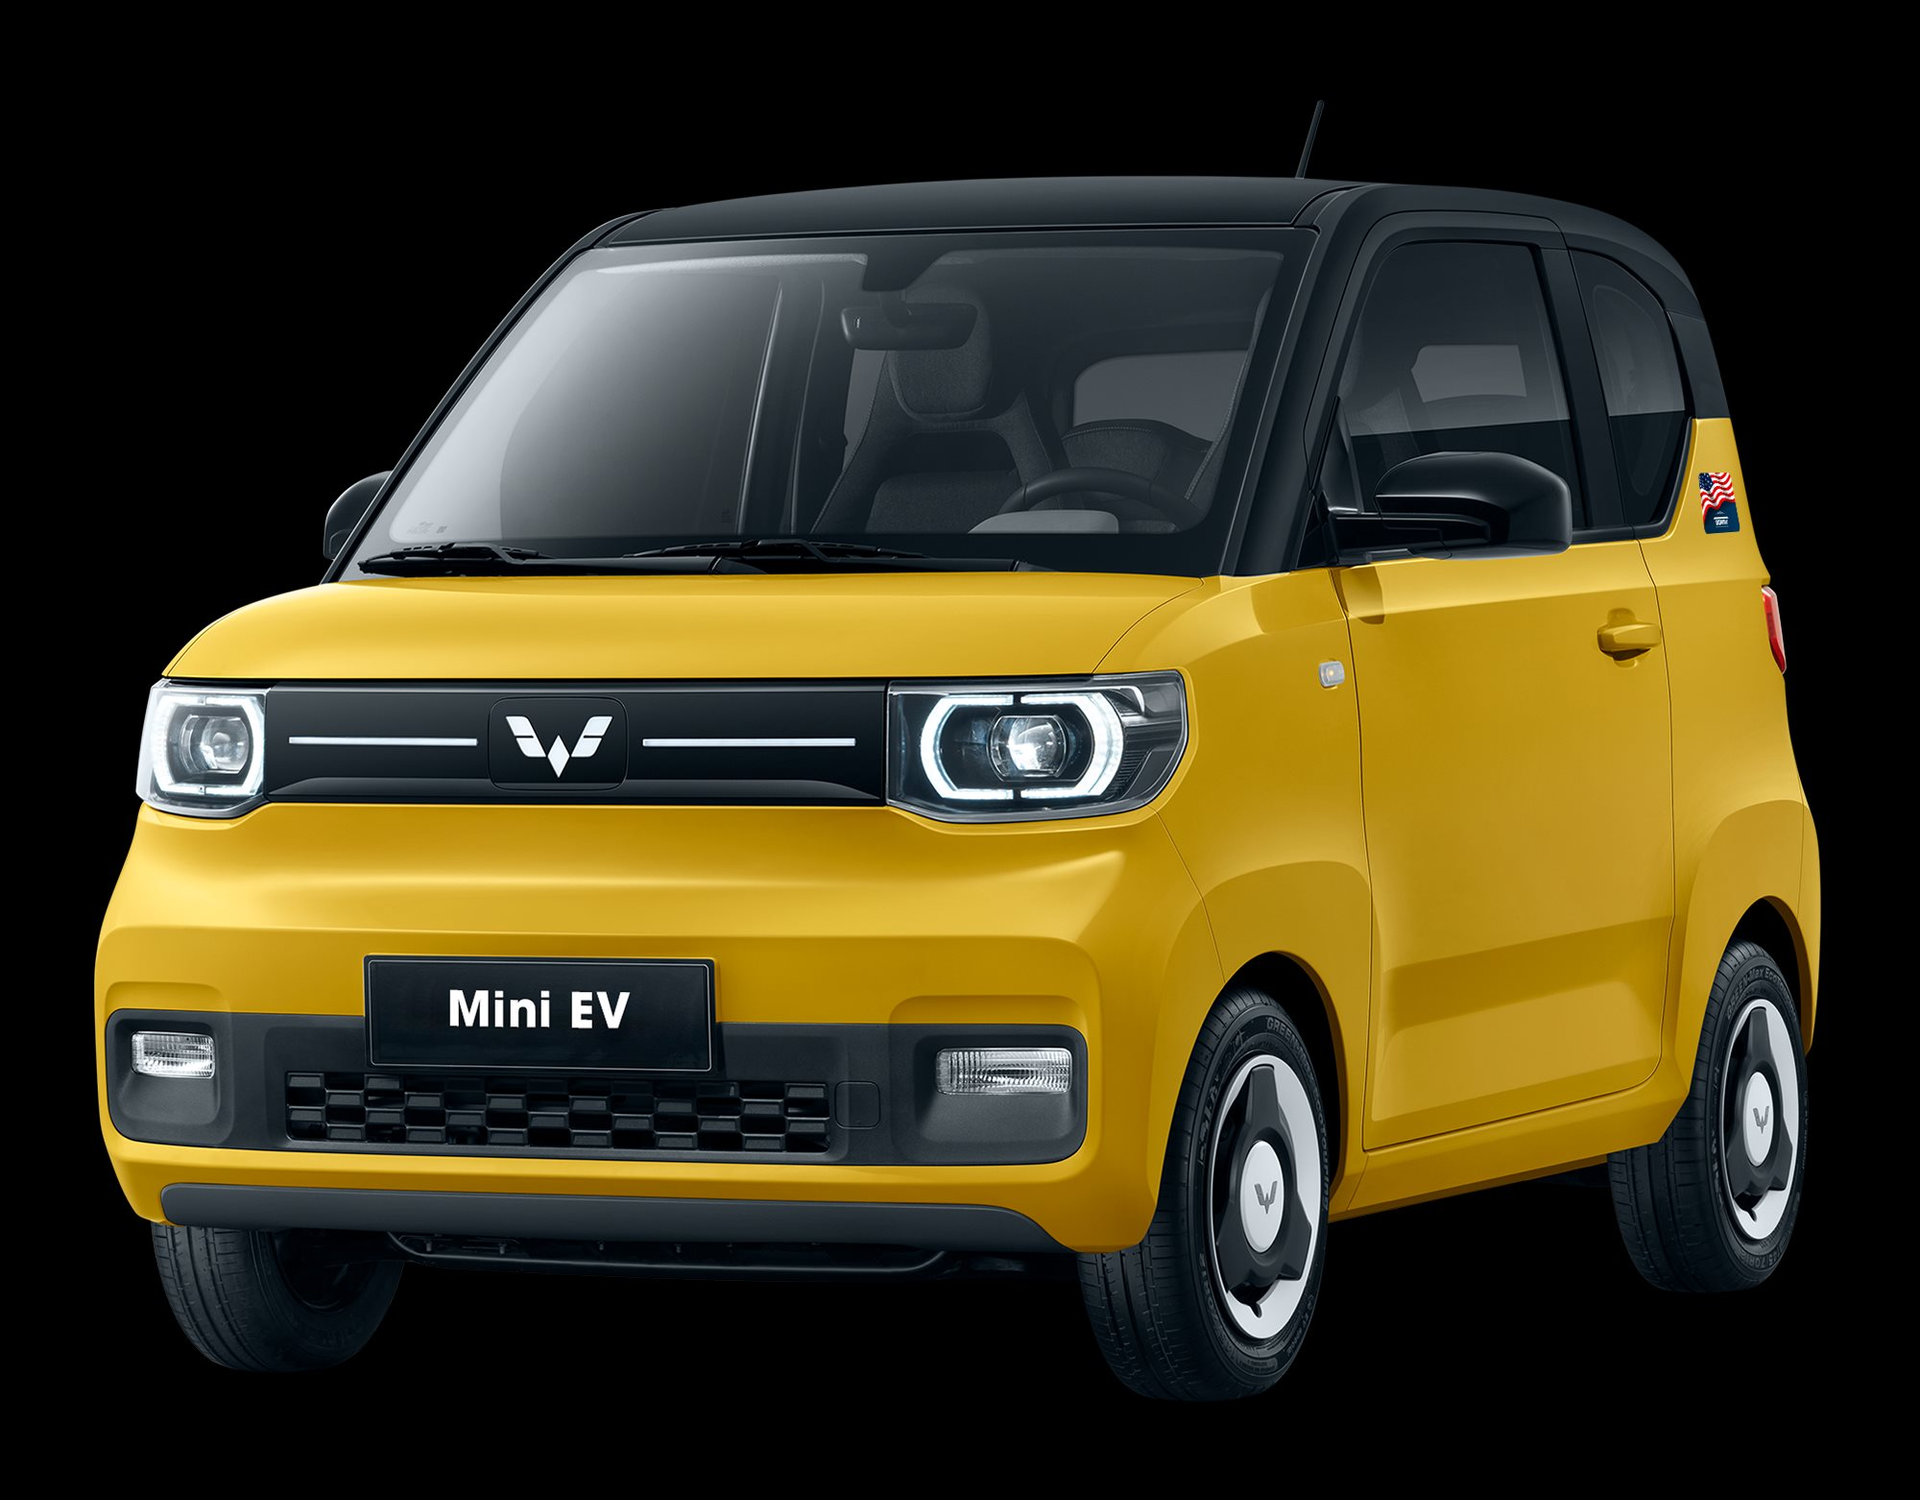 Ô tô điện mini rẻ nhất Việt Nam thông báo thay đổi ngoại thất – nhìn thay đổi mới thấy bất ngờ - Ảnh 2.